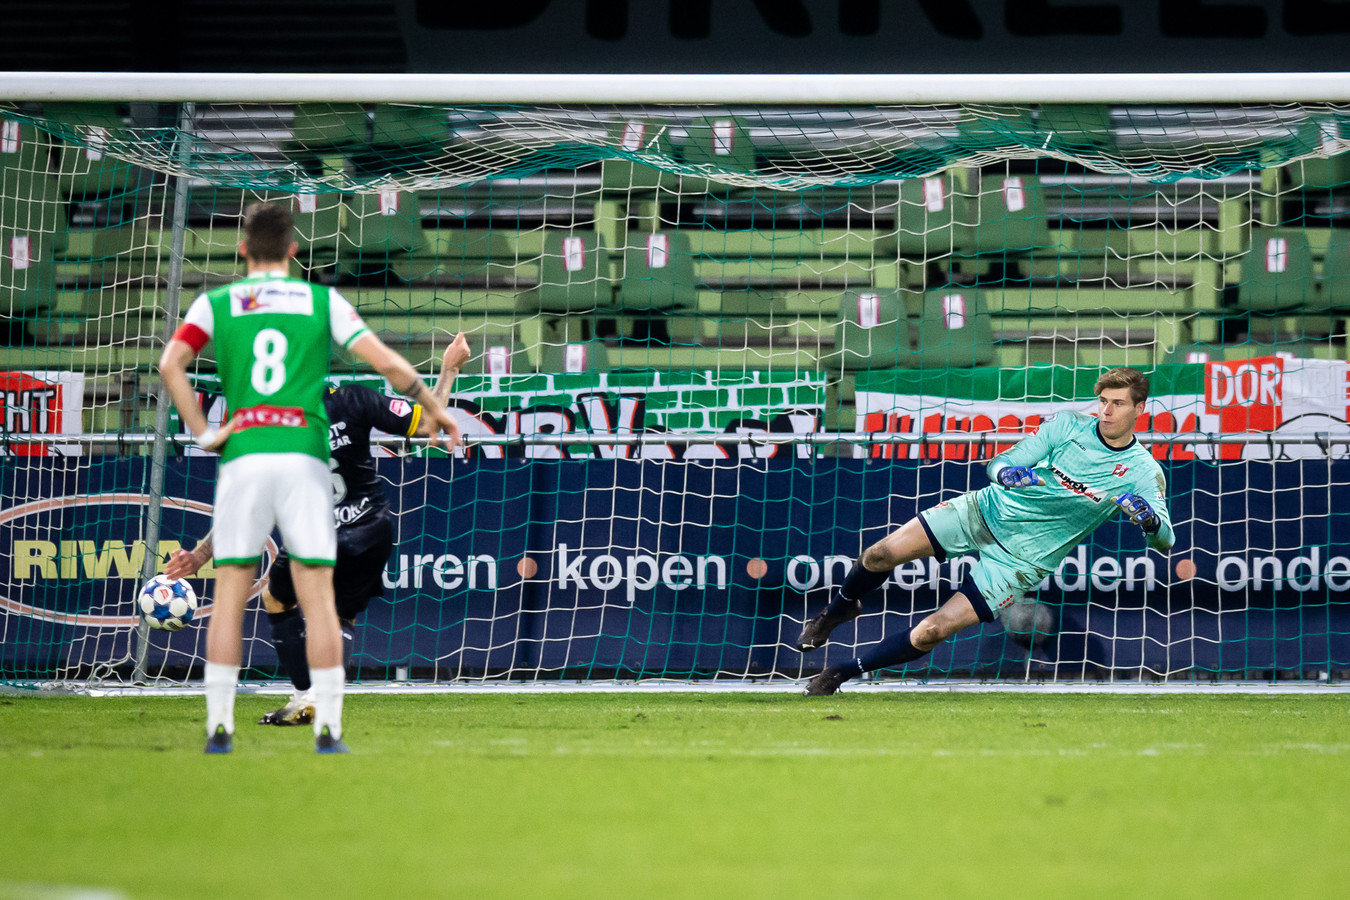 Pak slaag voor machteloos FC Dordrecht: 'We deden weinig | Foto | AD.nl